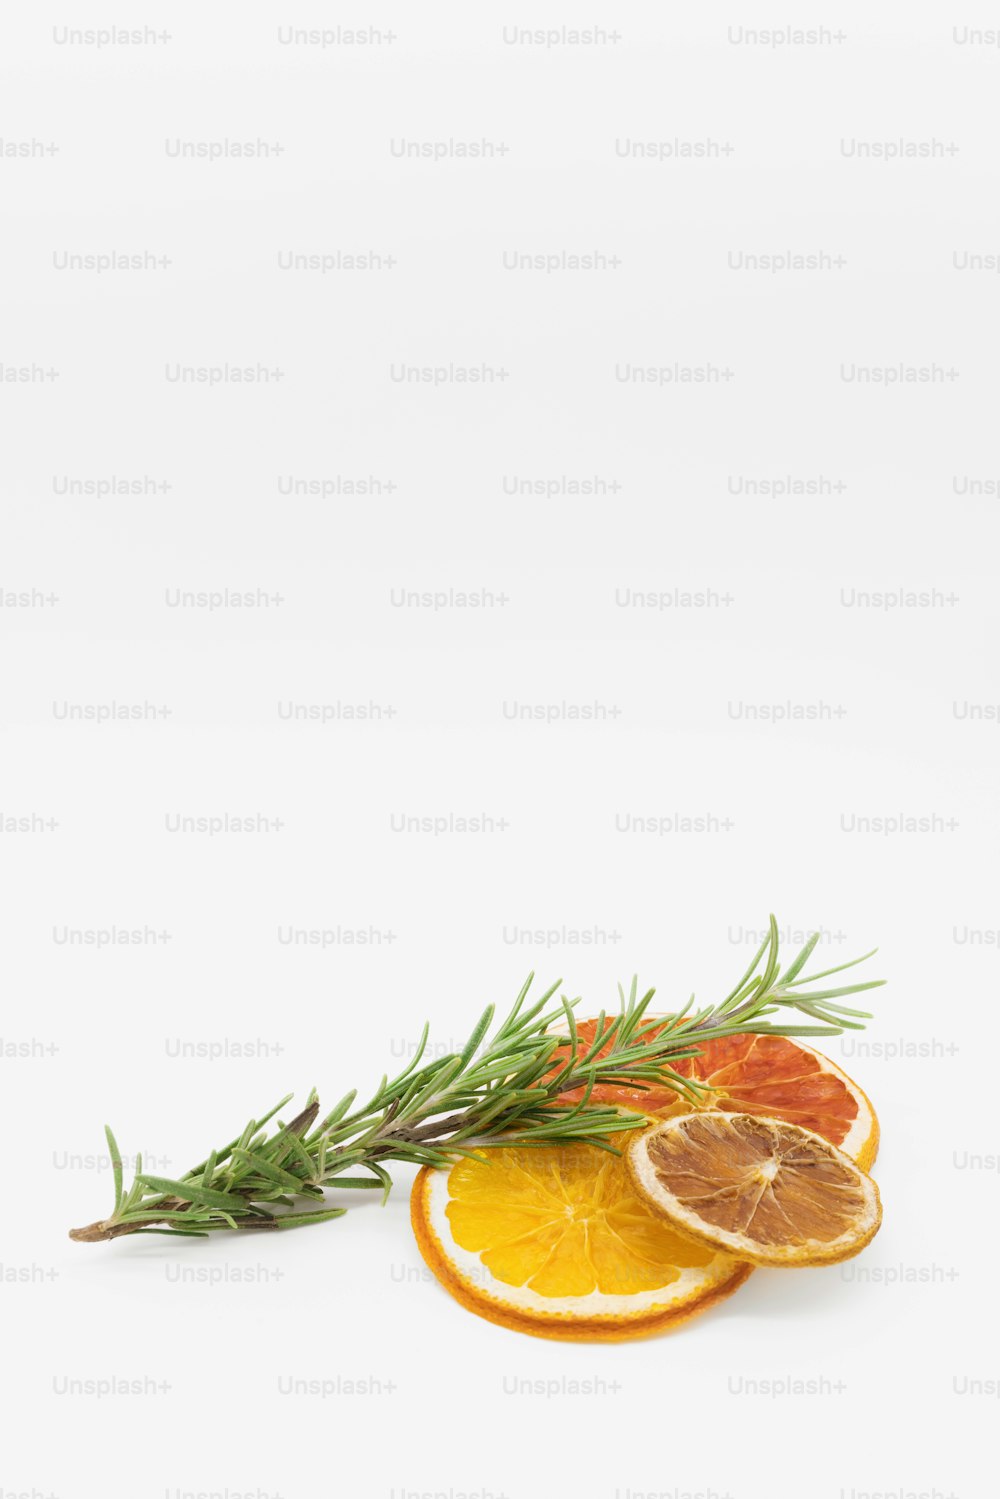 a lemon and a sliced orange